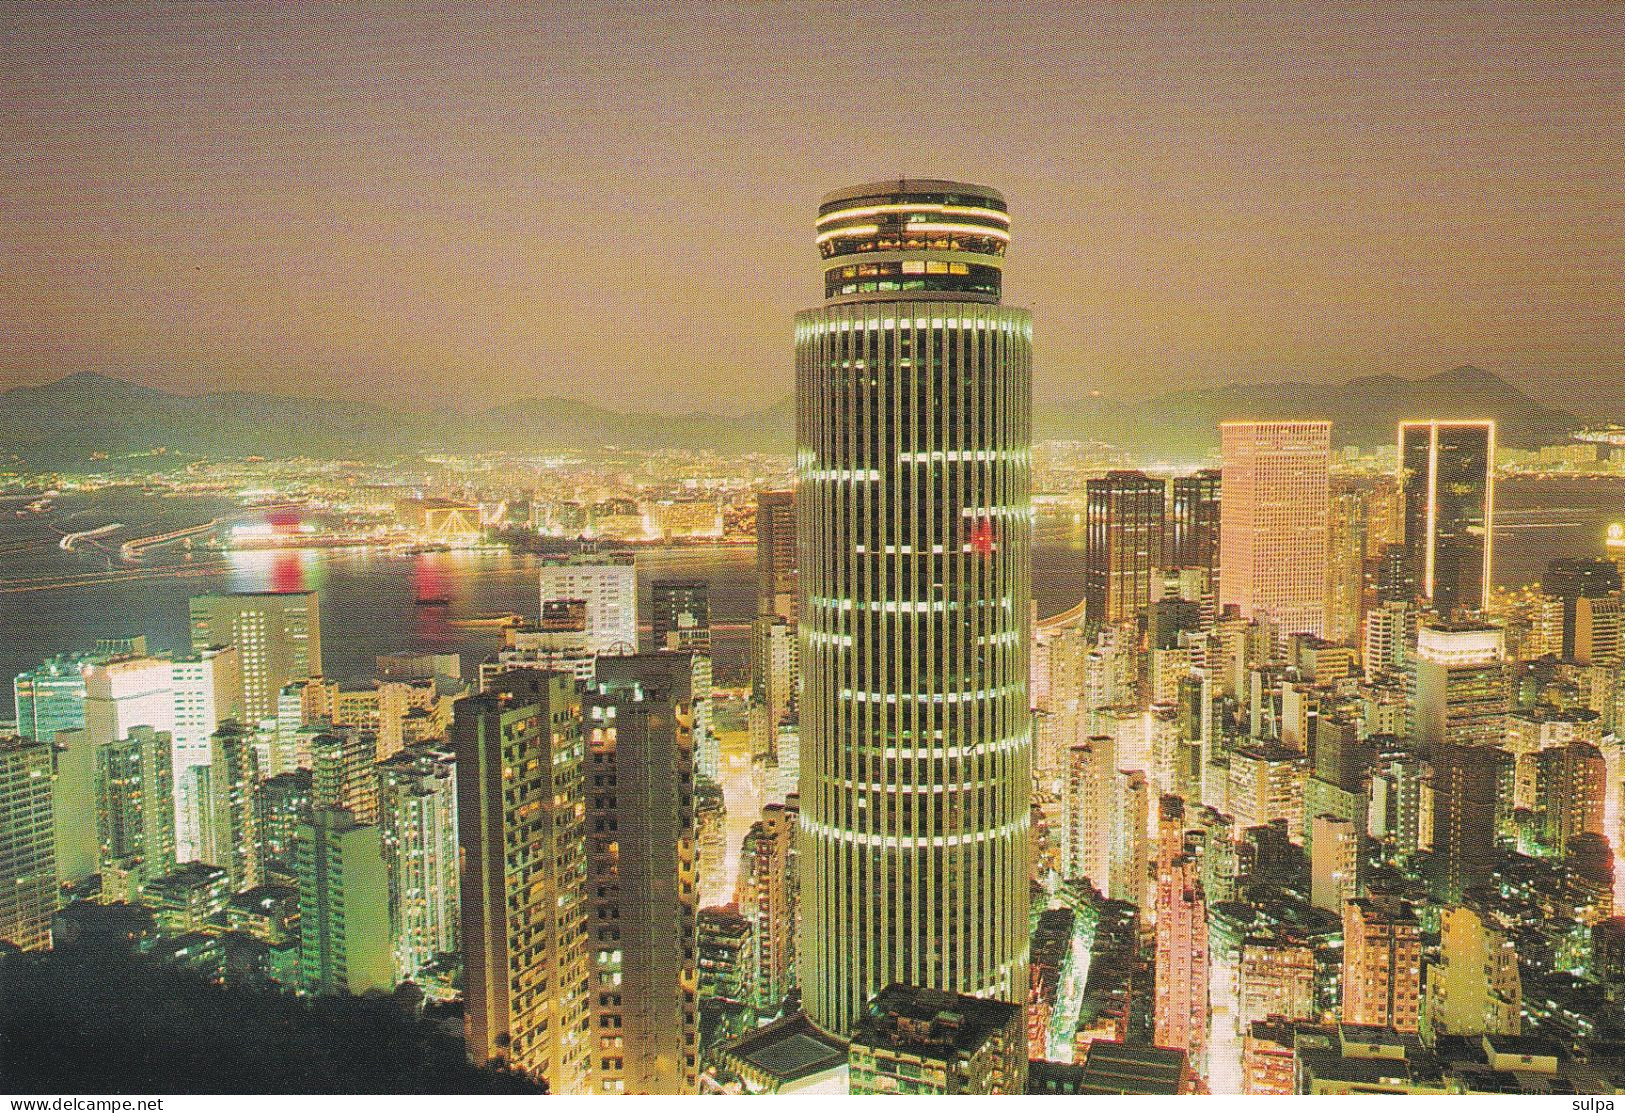 Hong Kong, Wanchal At Night - China